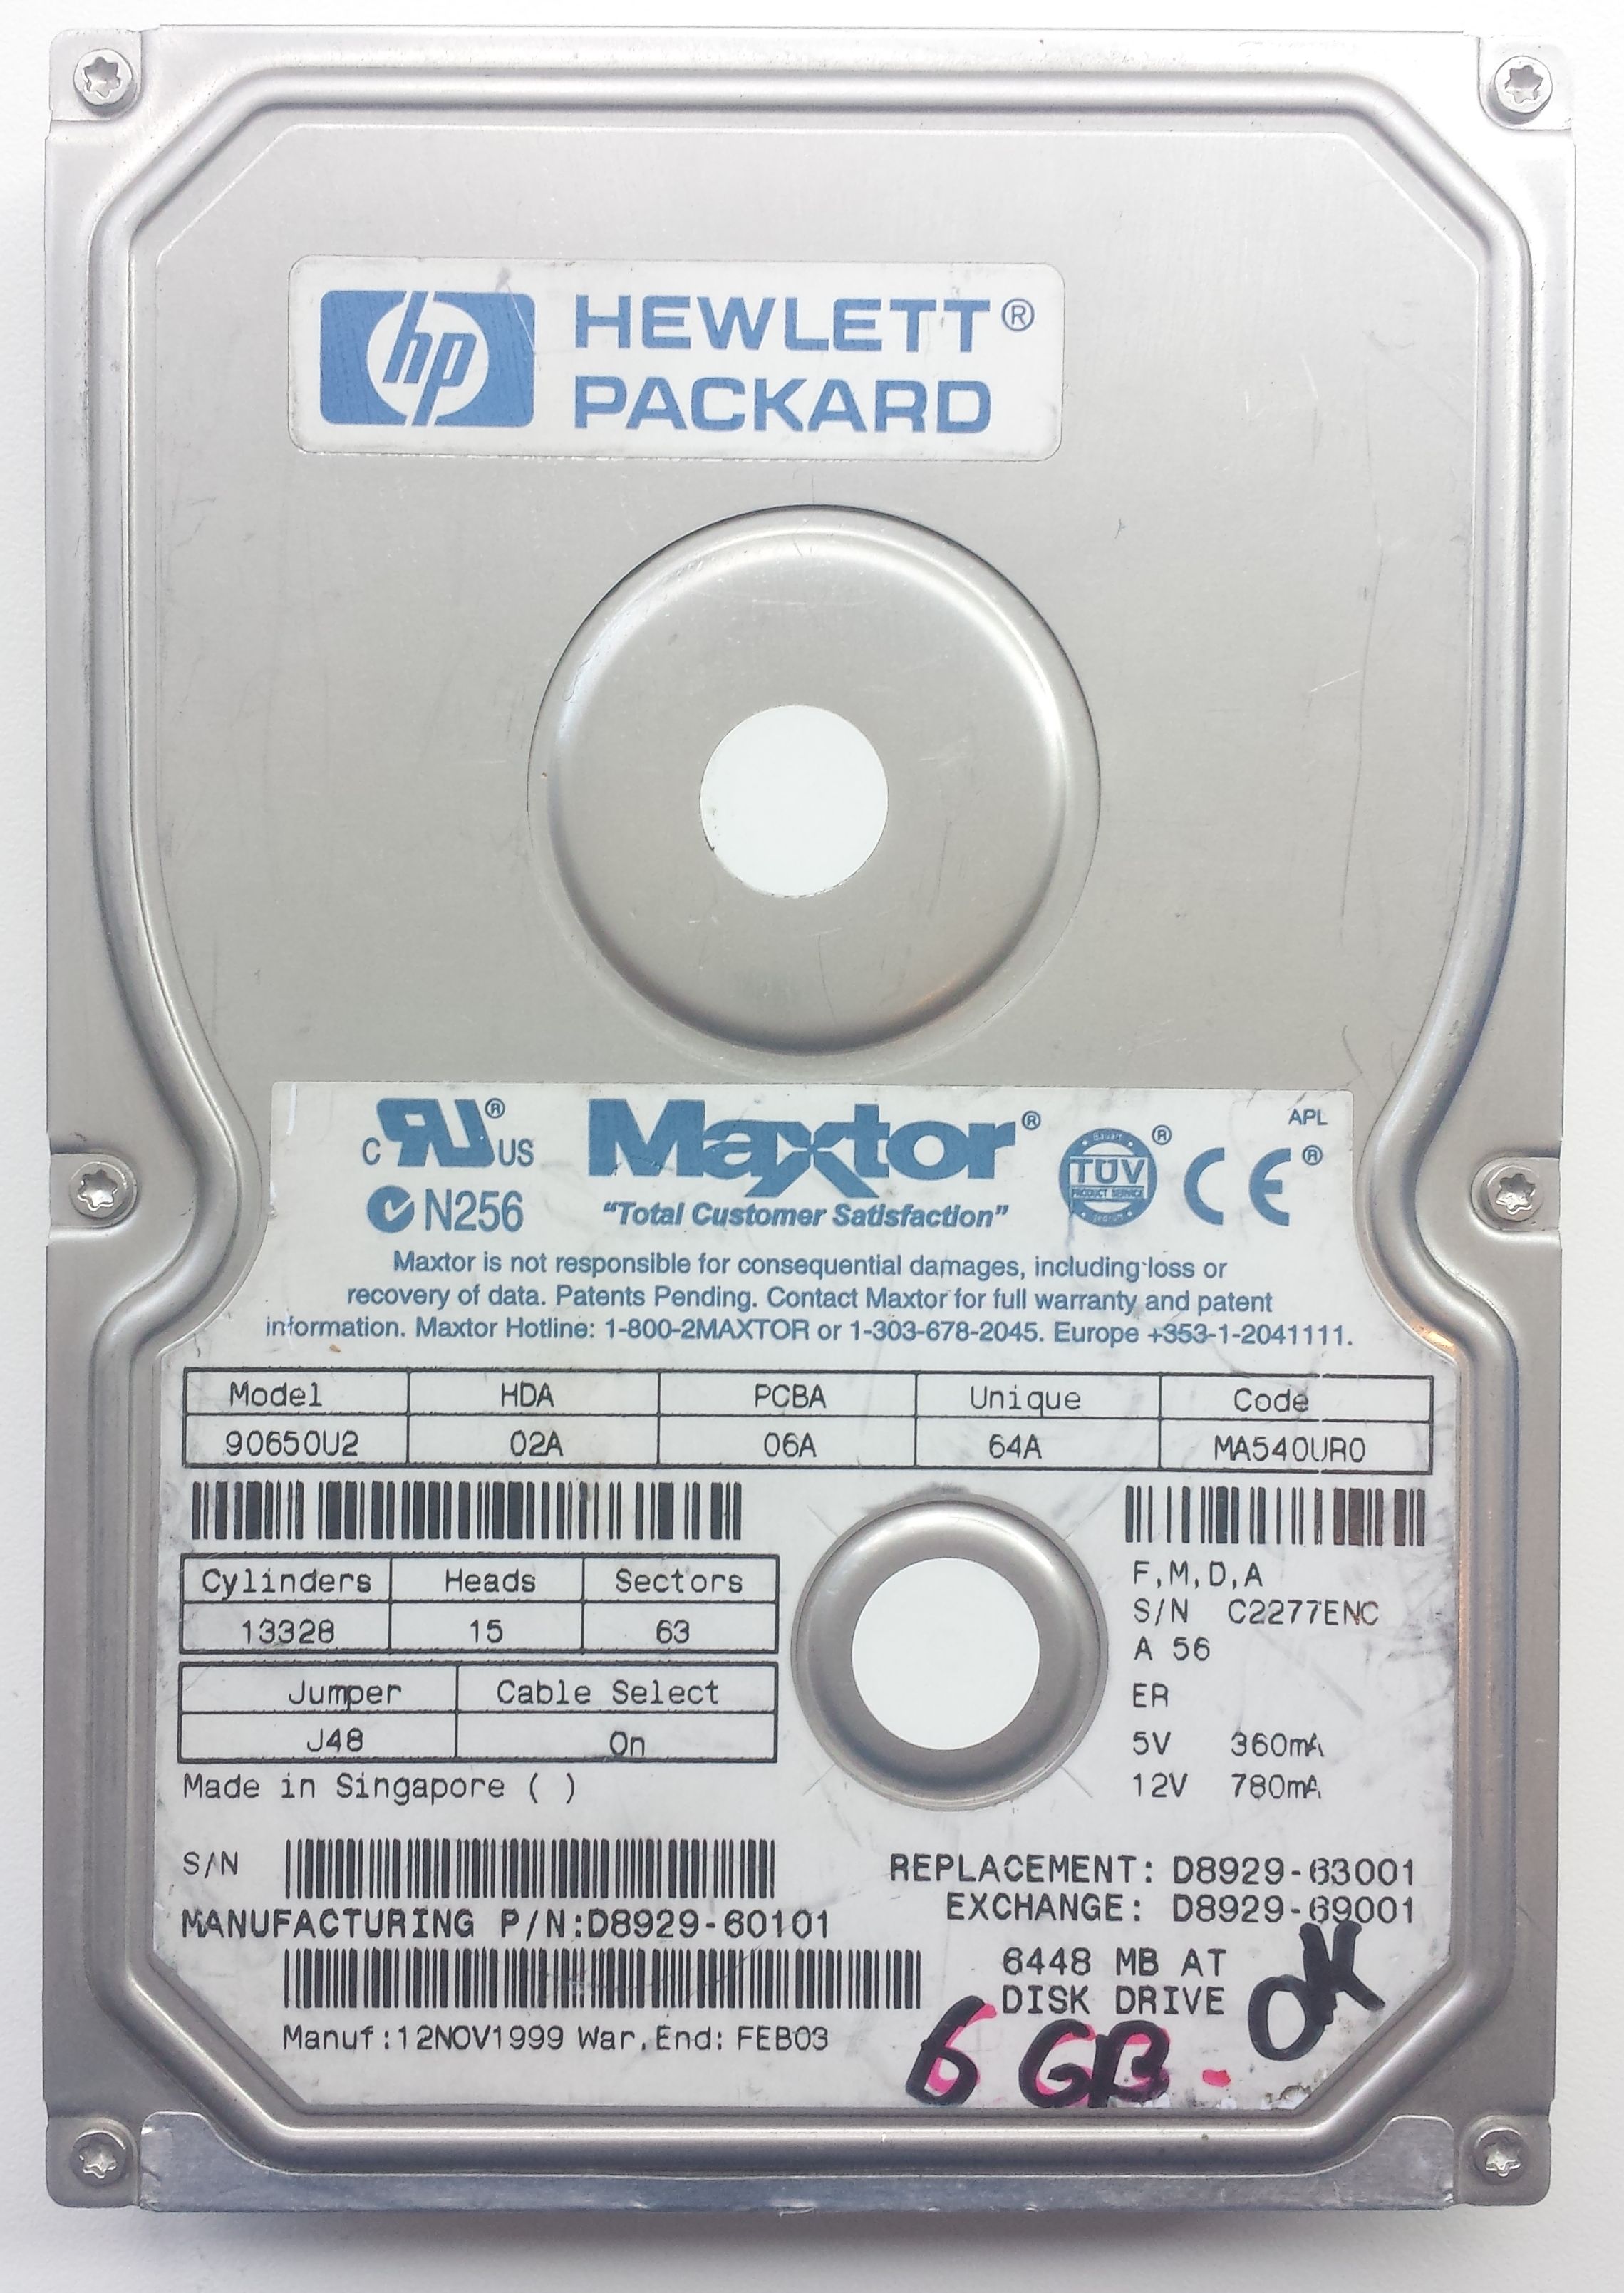 HDD PATA/66 3.5" 6.5GB / Maxtor DiamondMax 6800 (90650U2)